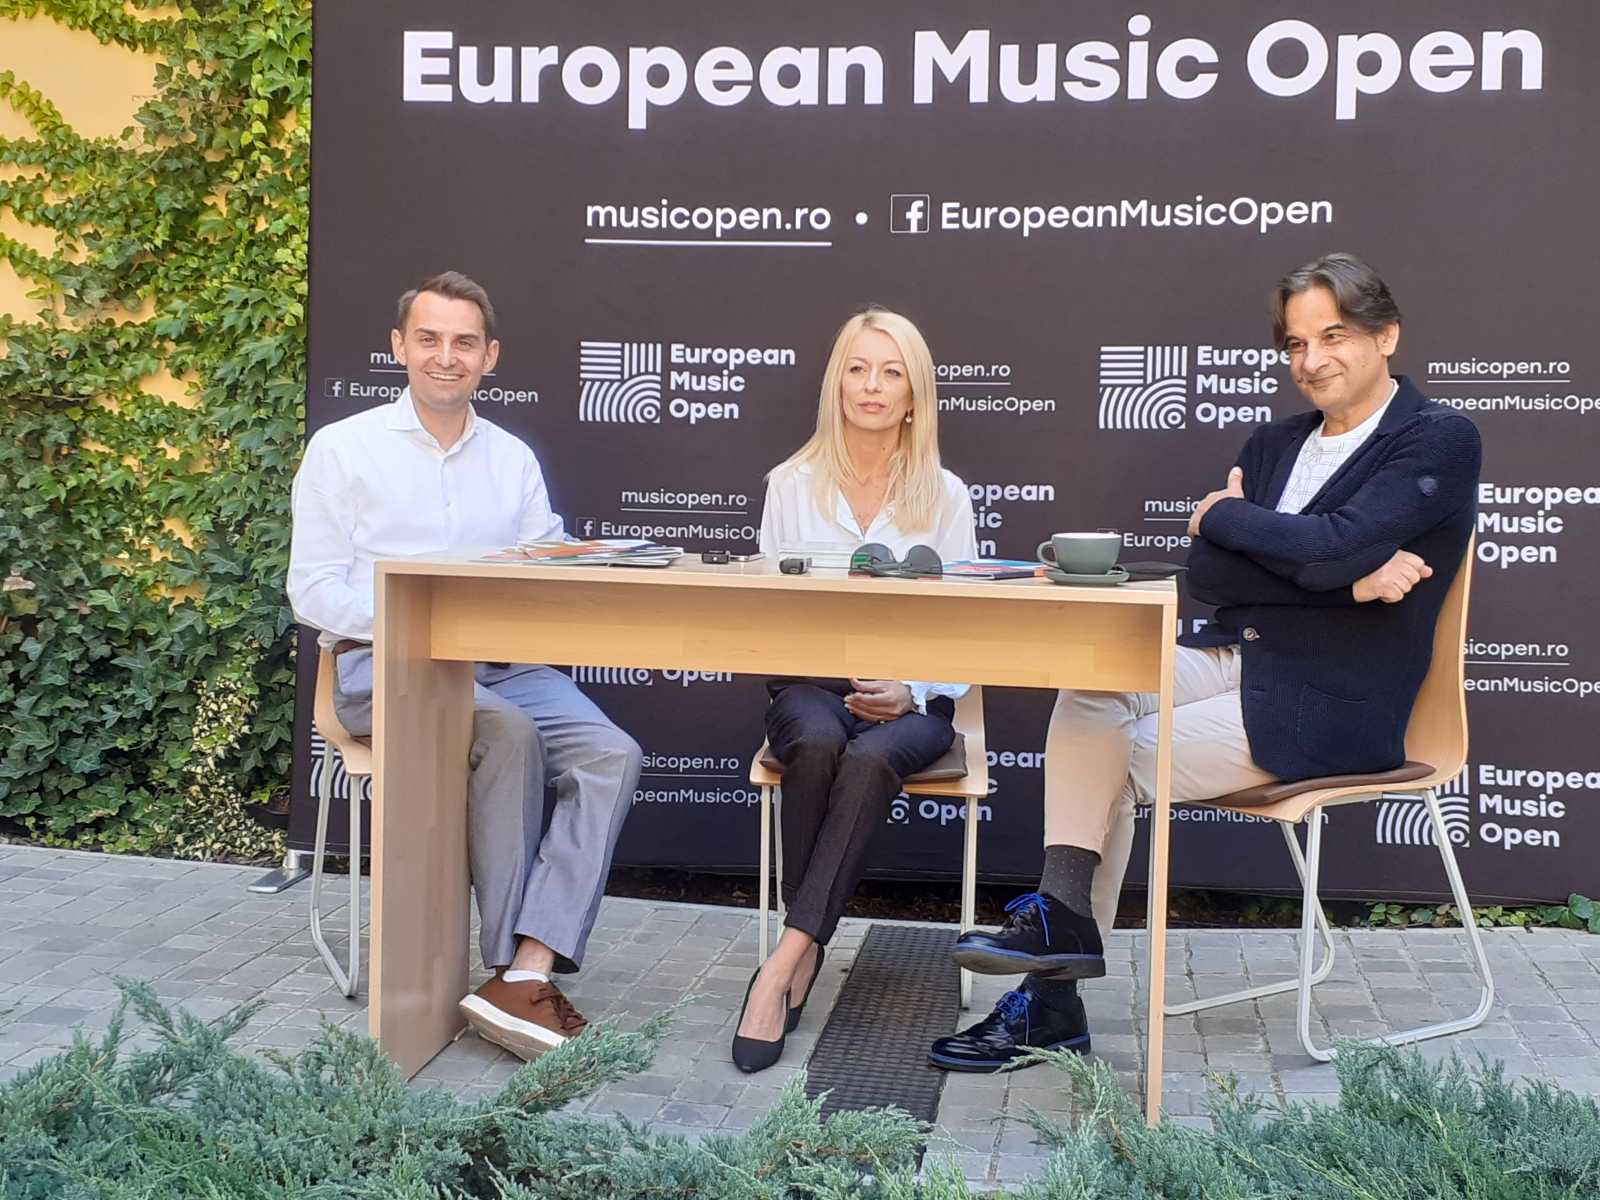 Balról jobbra: Mihai Jurca városmenedzser, Carmen Rus, a filharmónia megbízott menedzsere, Alexandru Badea operaénekes | A szerző felvétele